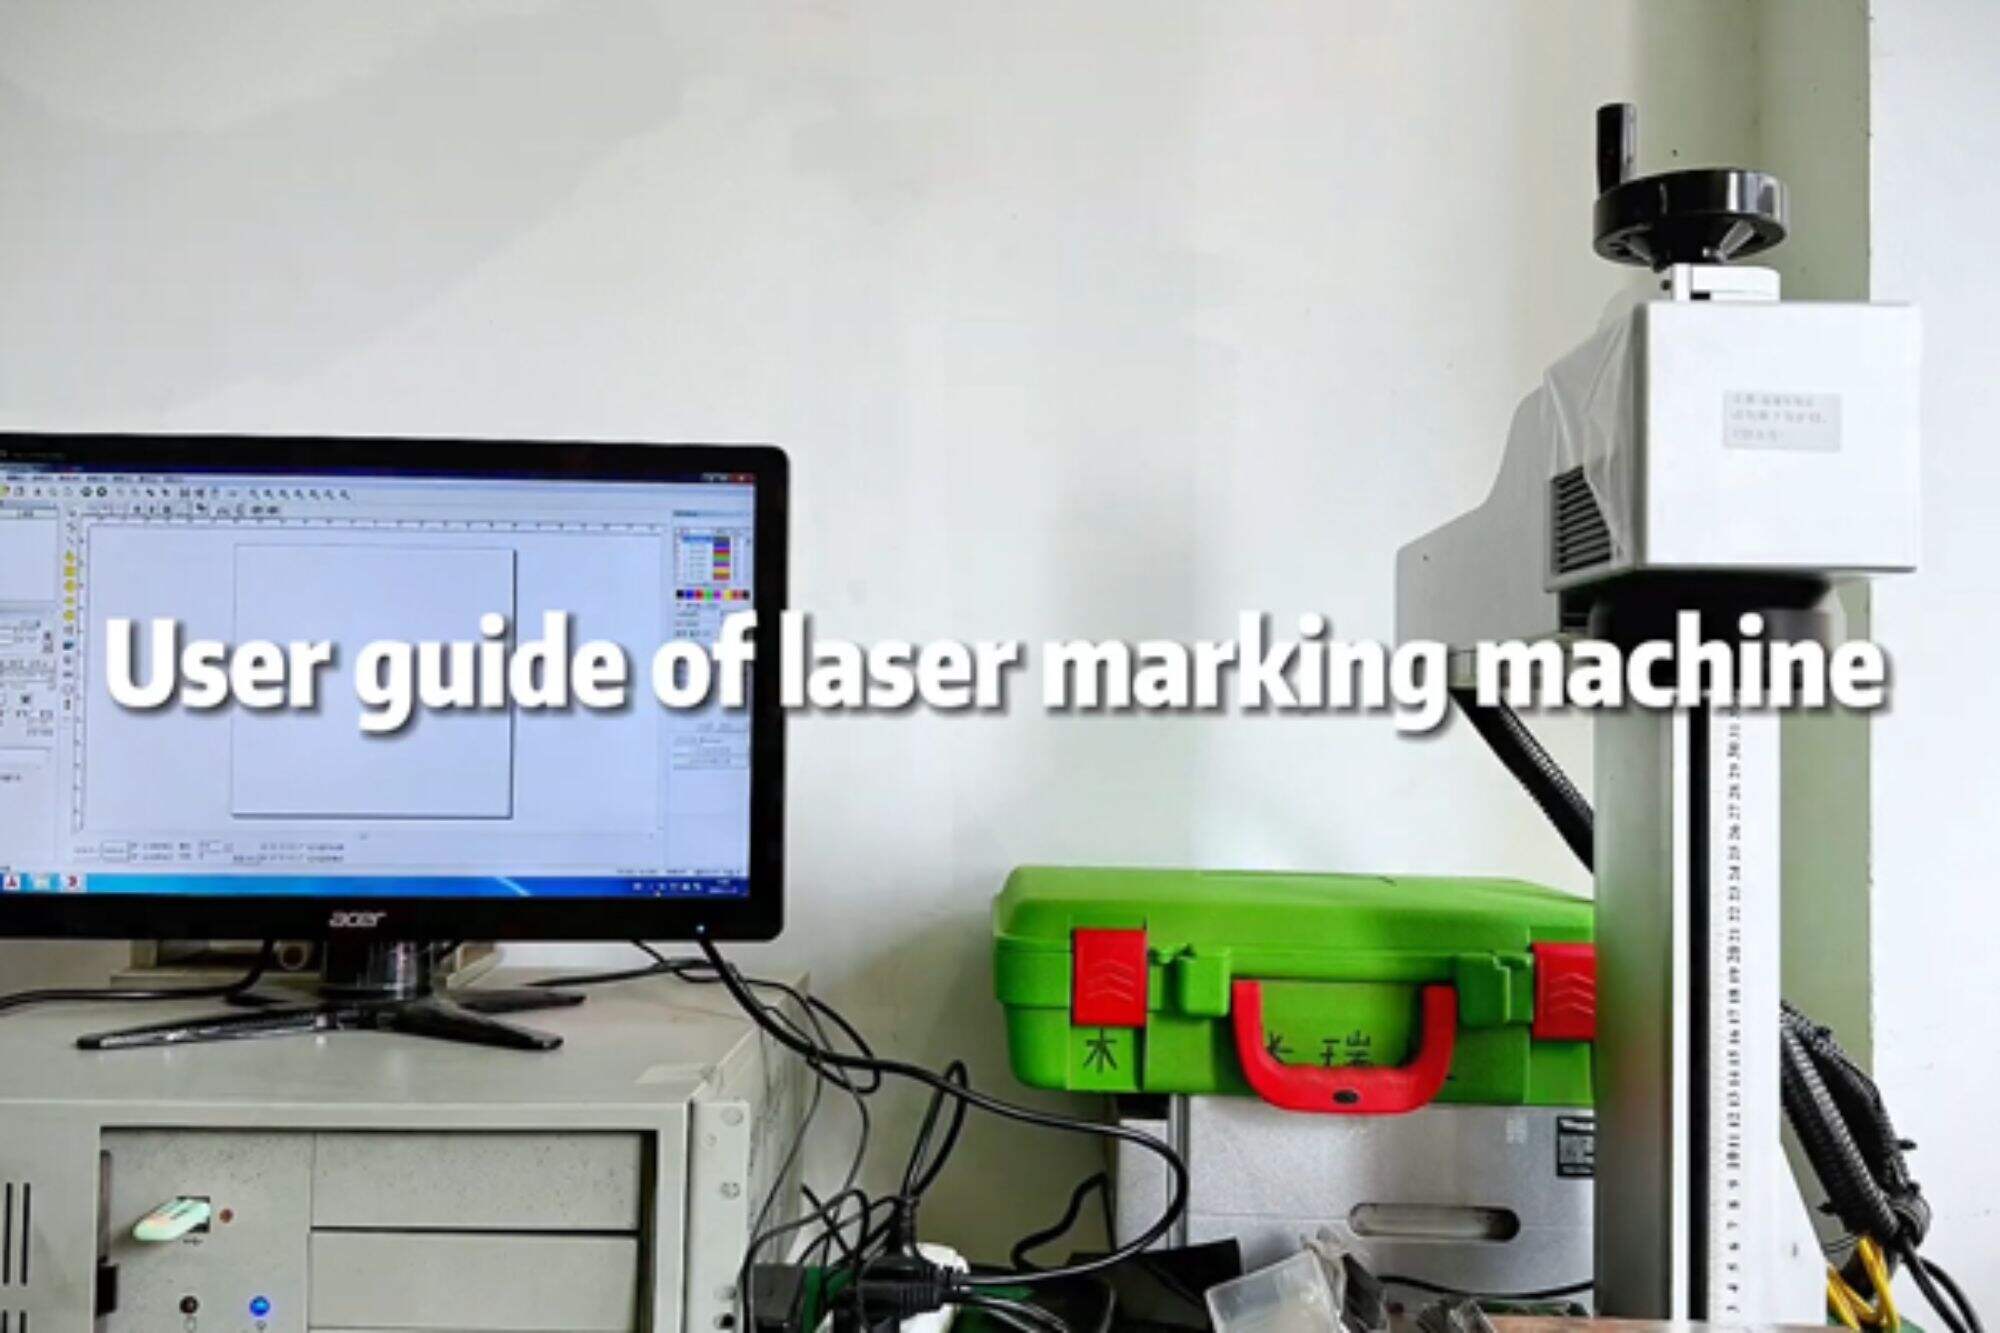 Tutorial de operação da máquina de marcação a laser Dmk